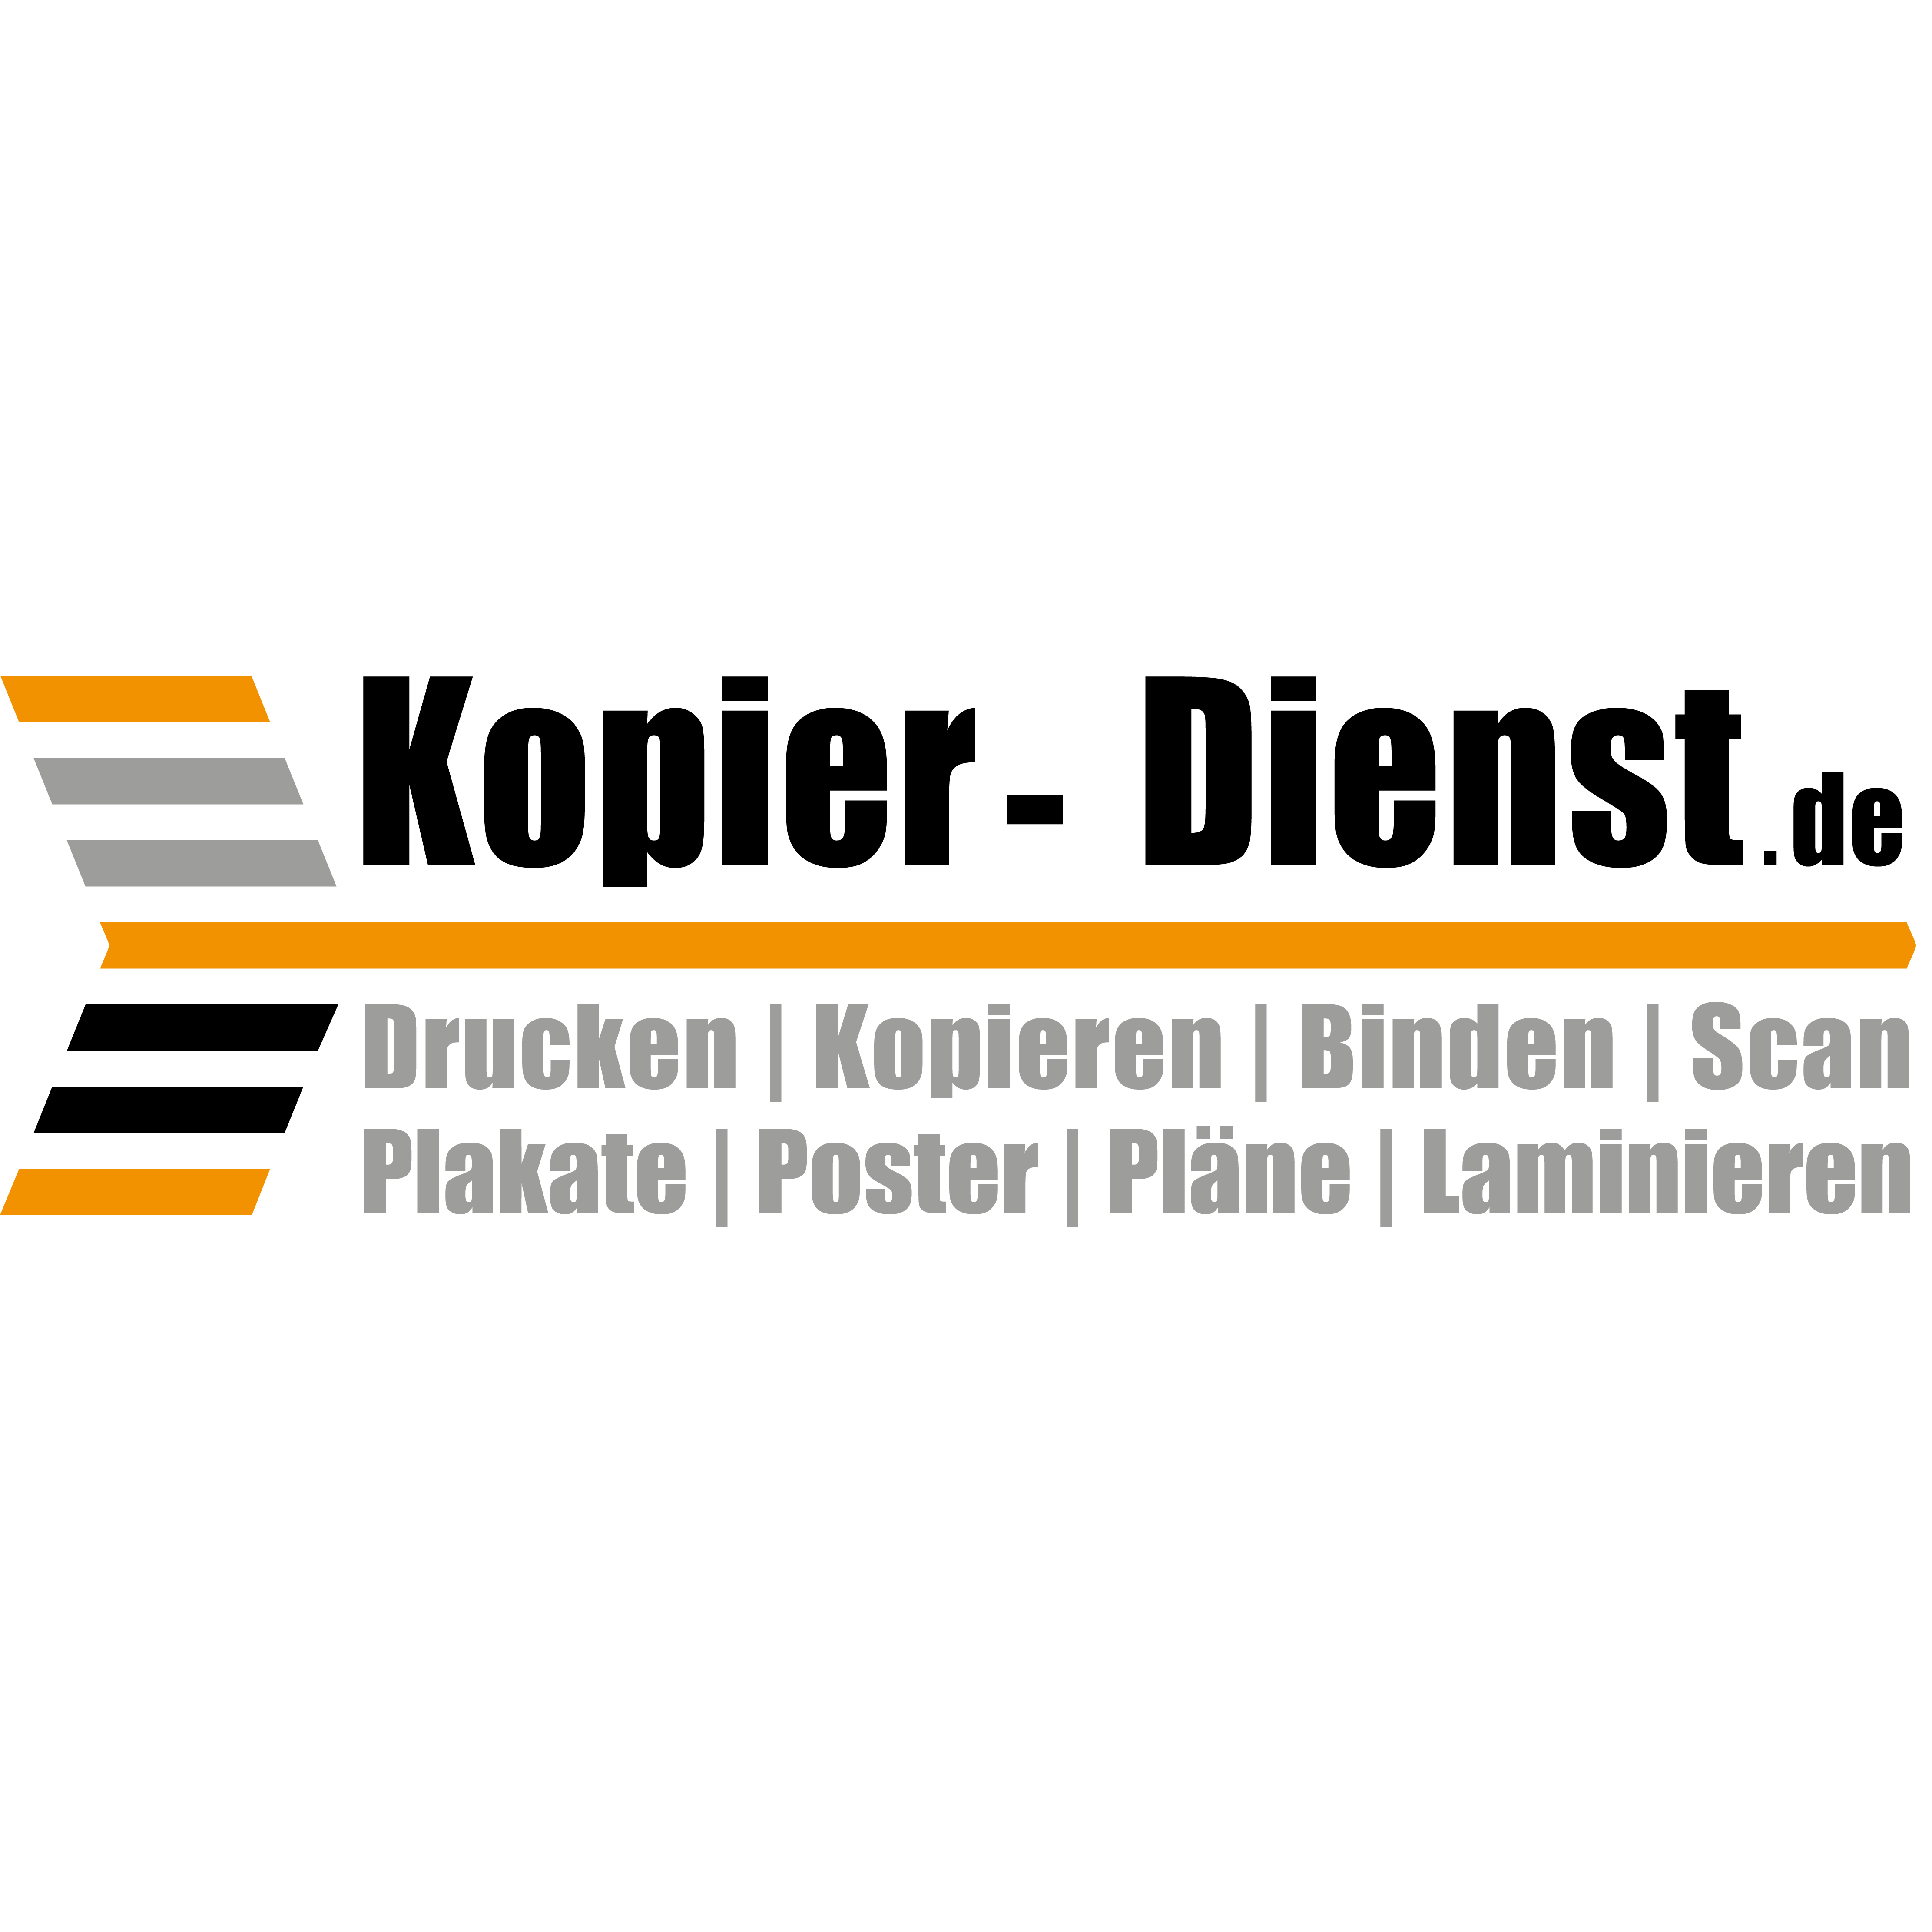 Logo Kopier-dienst.de